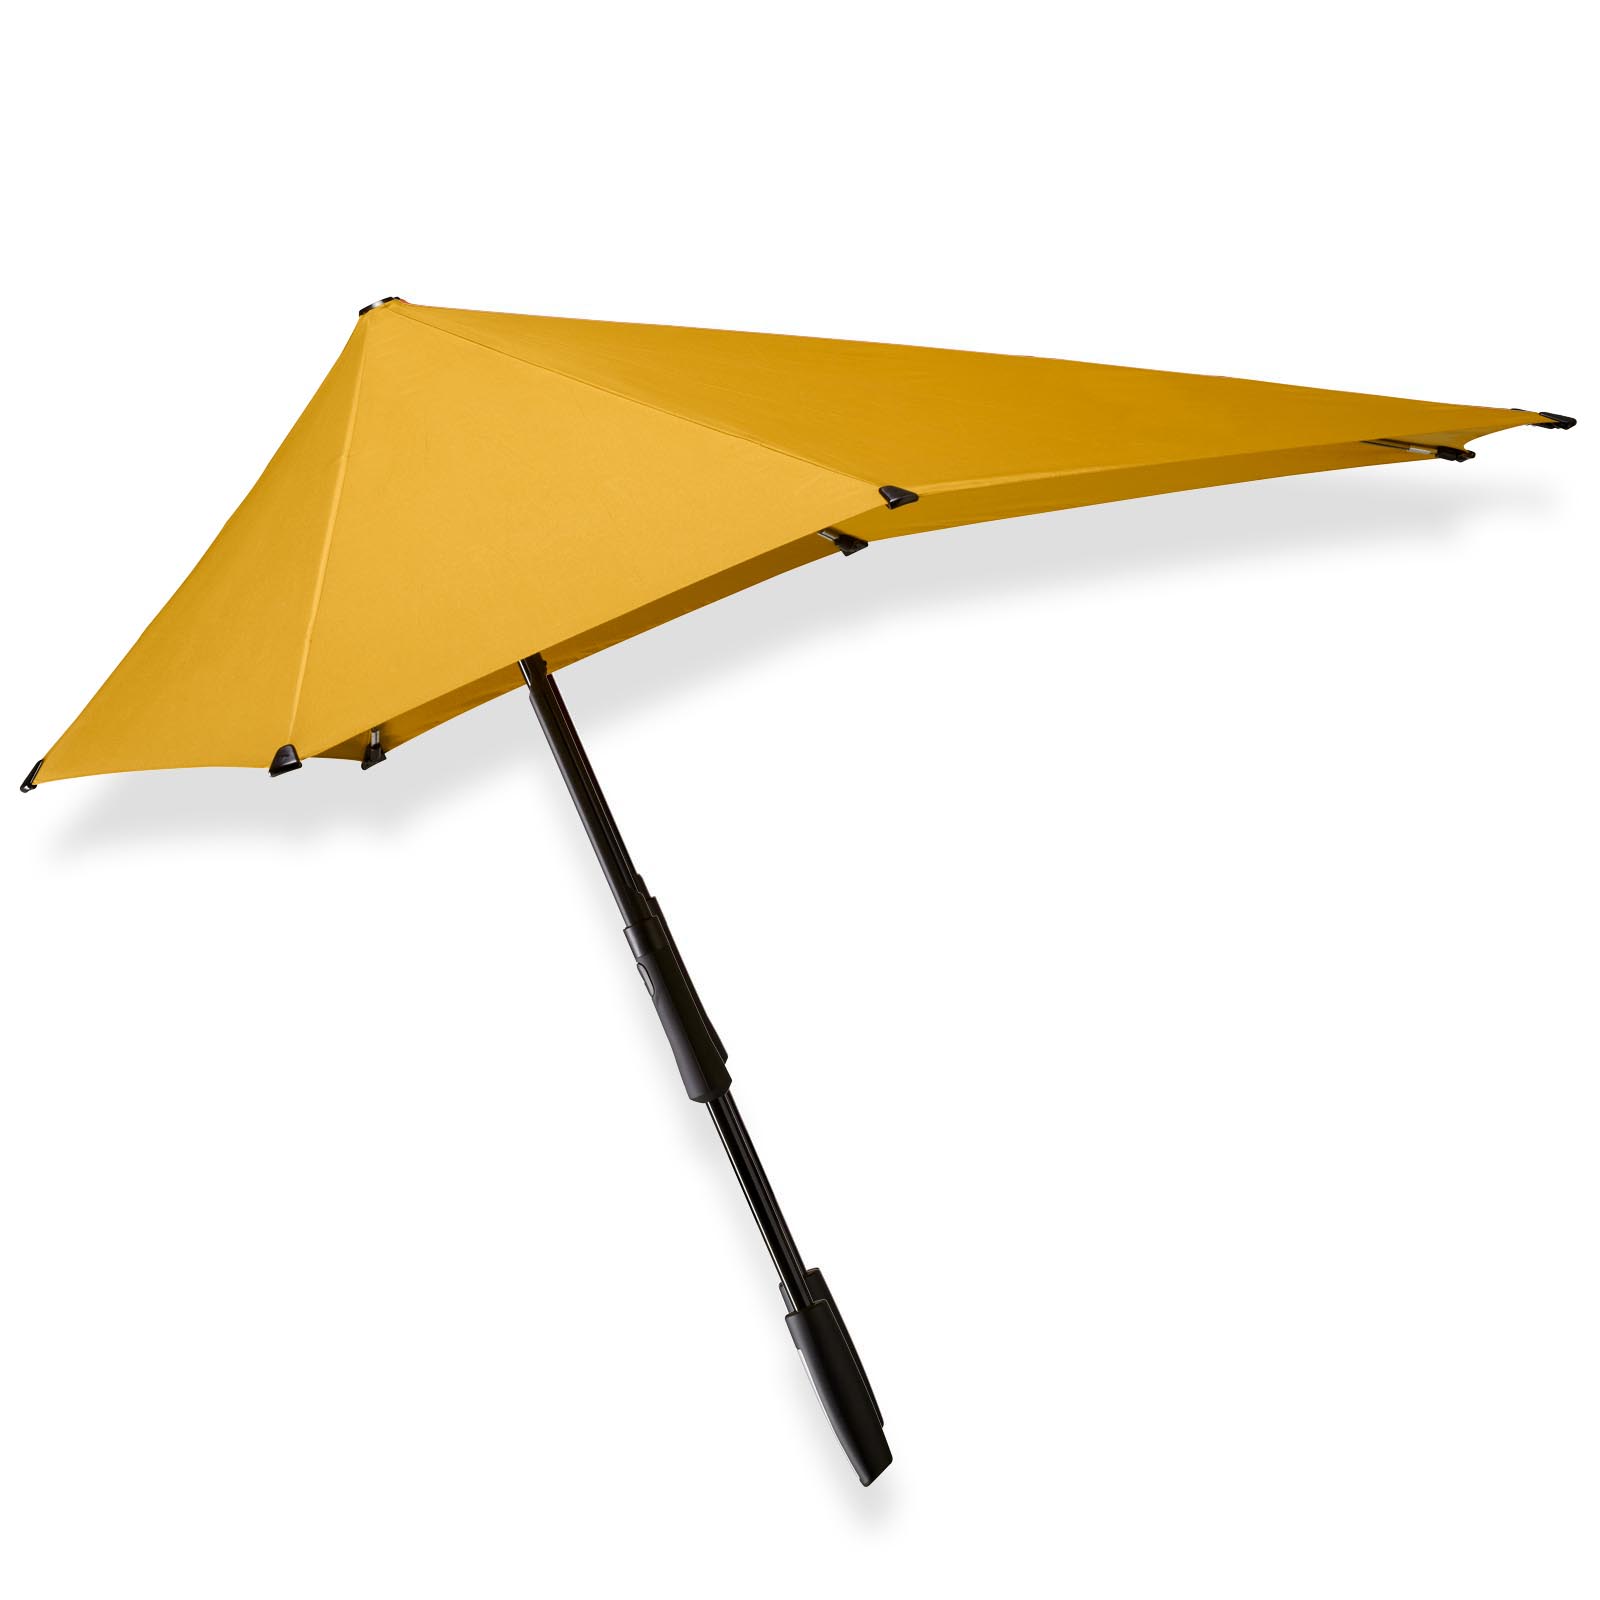 sigaar Diplomaat Pat Gele lange grote paraplu kopen? senz° large daylily yellow